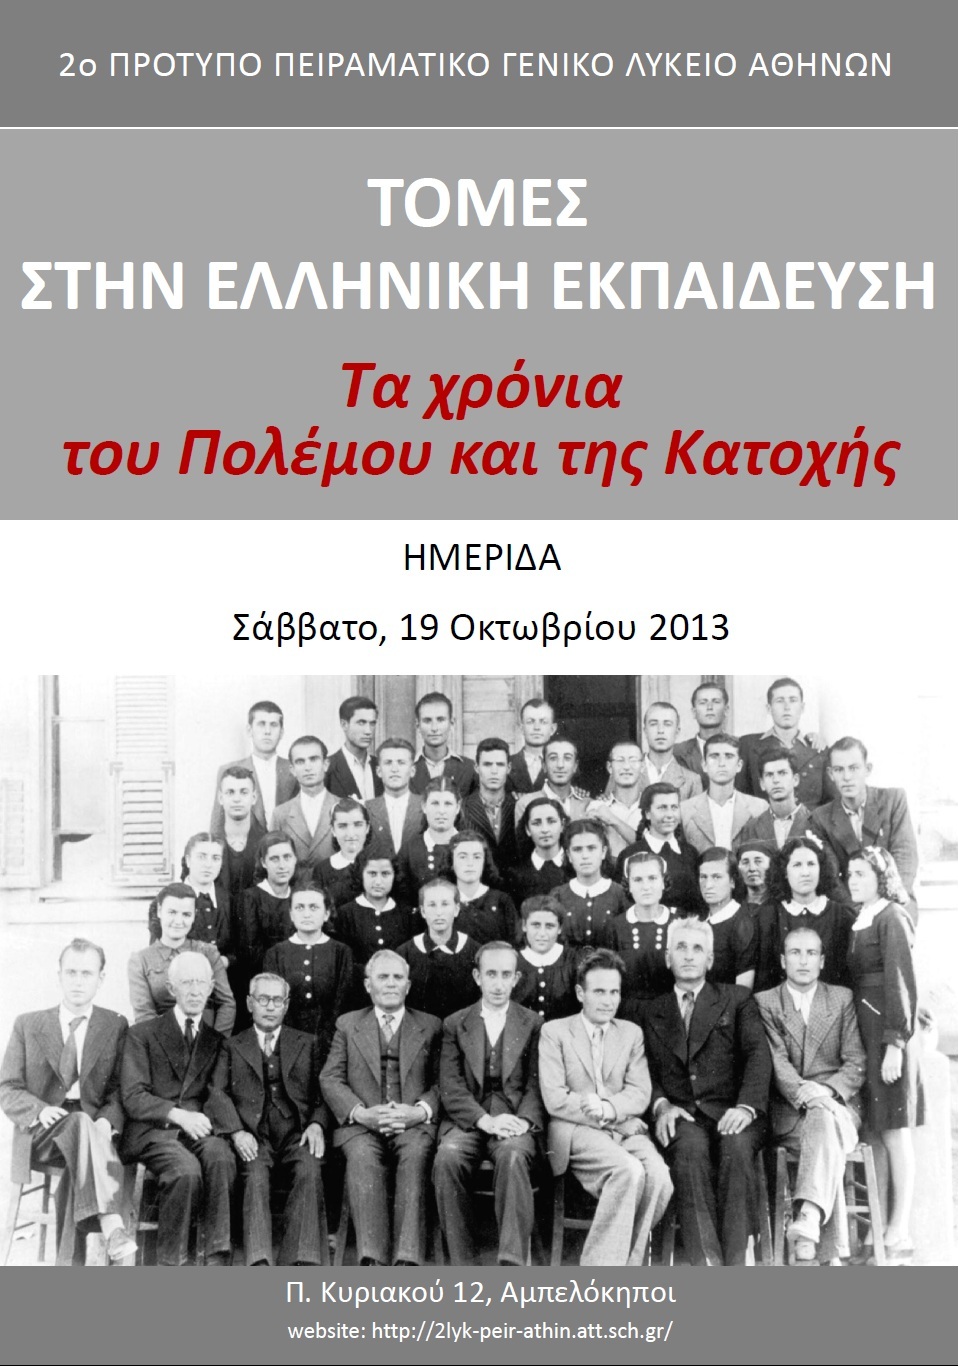 Ημερίδα με θέμα “Τομές στην ελληνική εκπαίδευση: Τα χρόνια του Πολέμου και της Κατοχής”, Σάββατο 19 Οκτωβρίου 2013